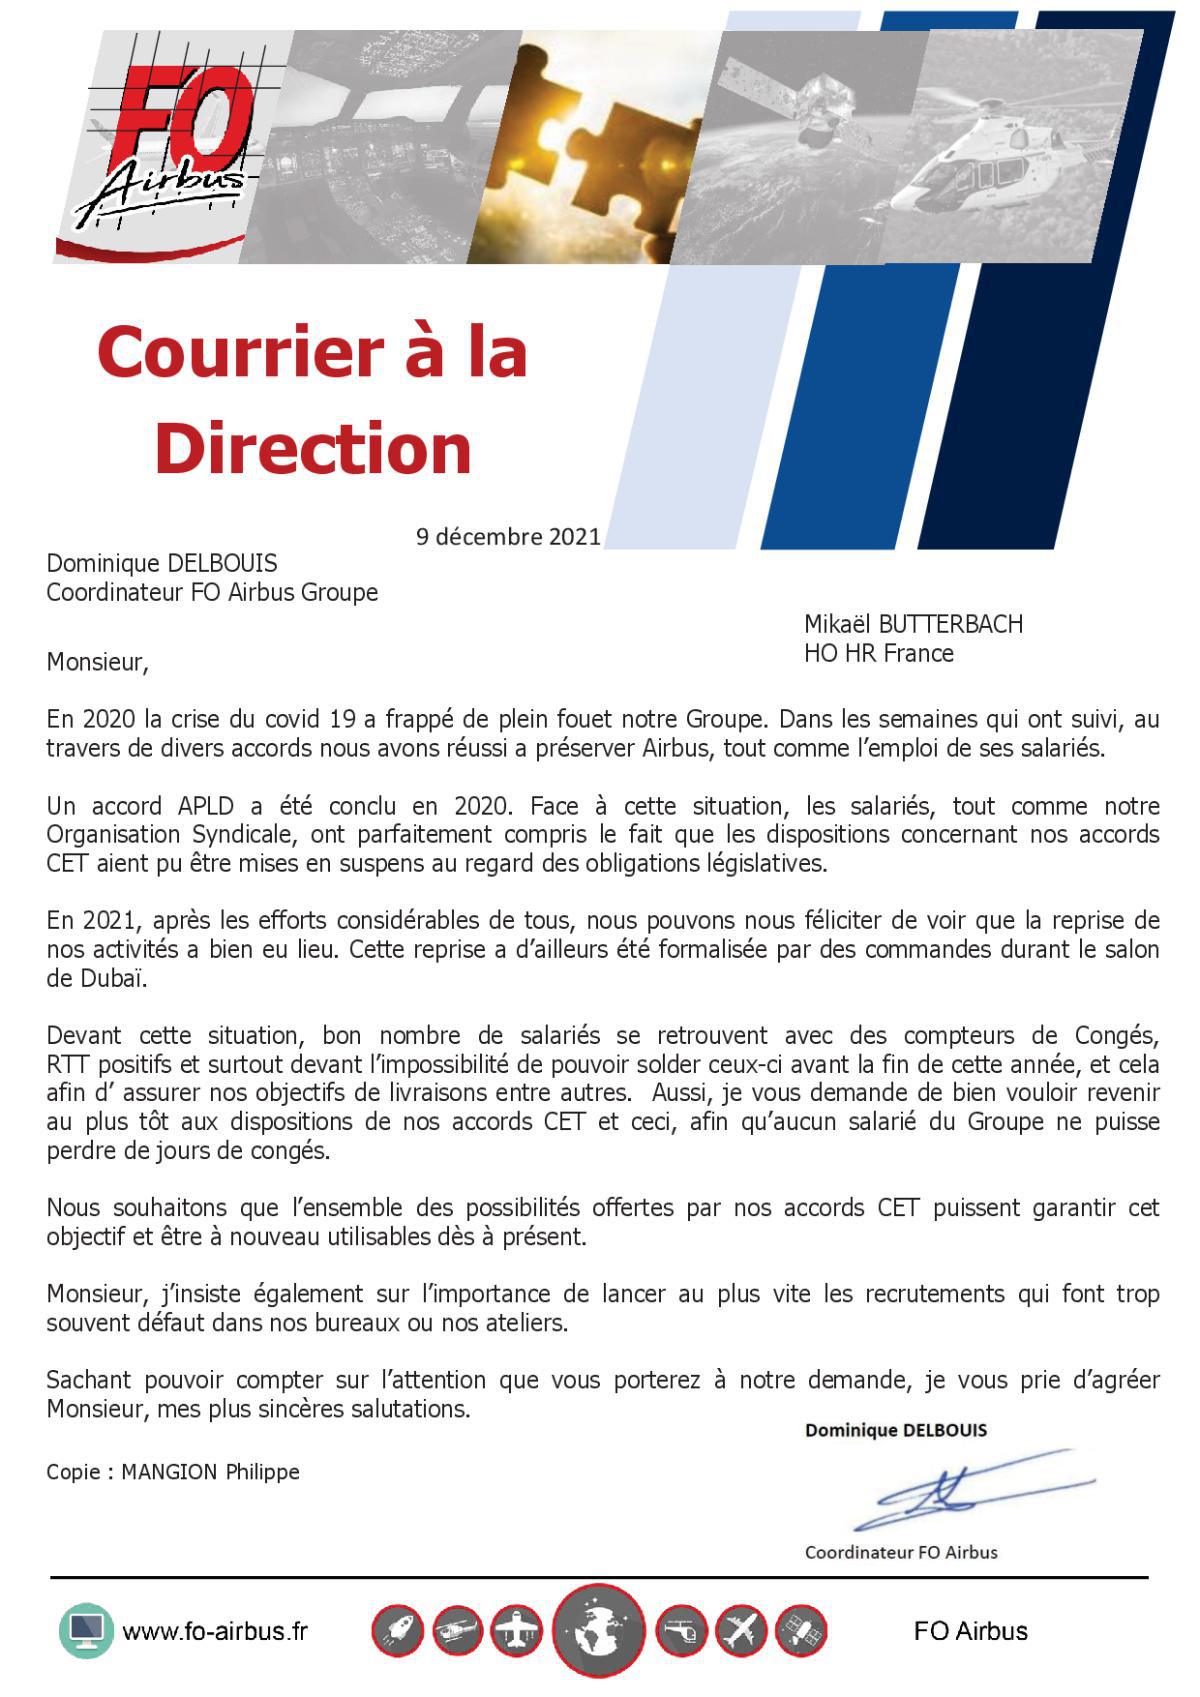 Courrier FO envoyé à la direction d’Airbus « Monsieur Mikaël BUTTERBACH – HO HR France 